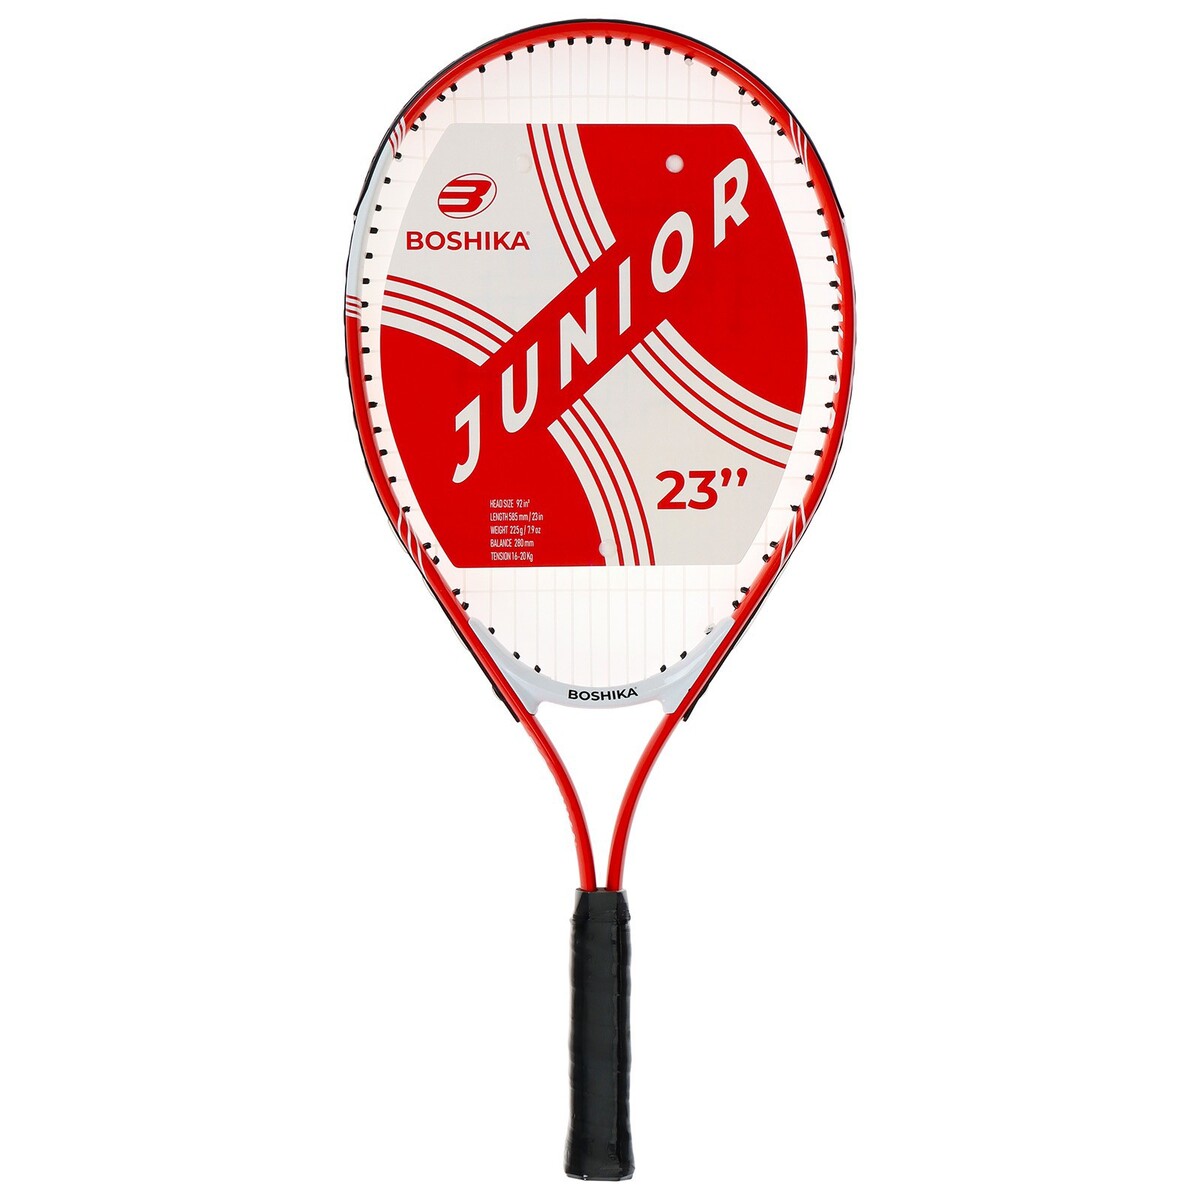 Ракетка для большого тенниса детская boshika junior, алюминий, 23'', цвет красный ракетка для большого тенниса head tour pro gr4 233422 желто